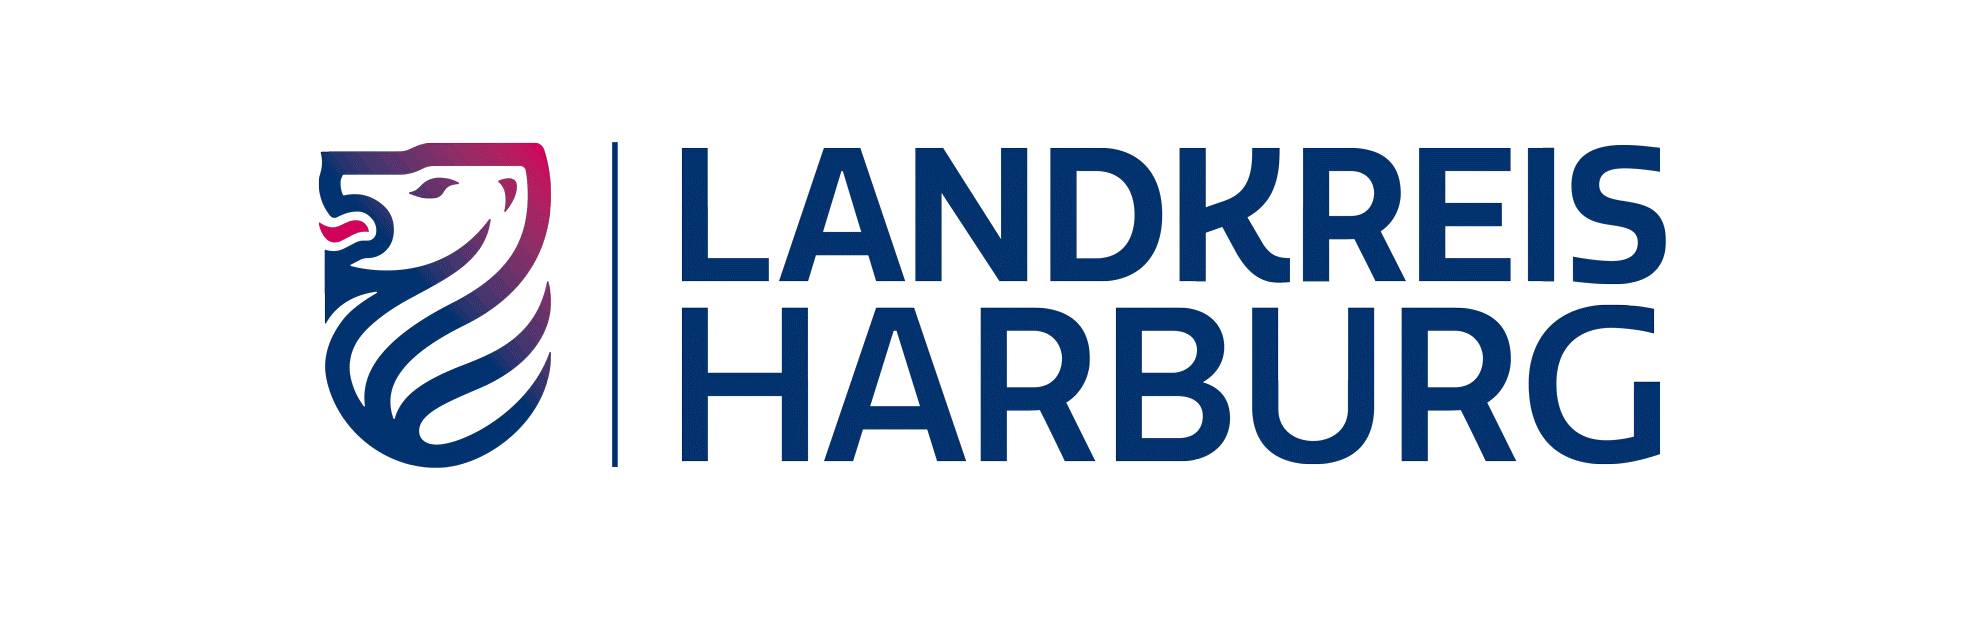 Bebauungsplan (Landkreis Harburg)